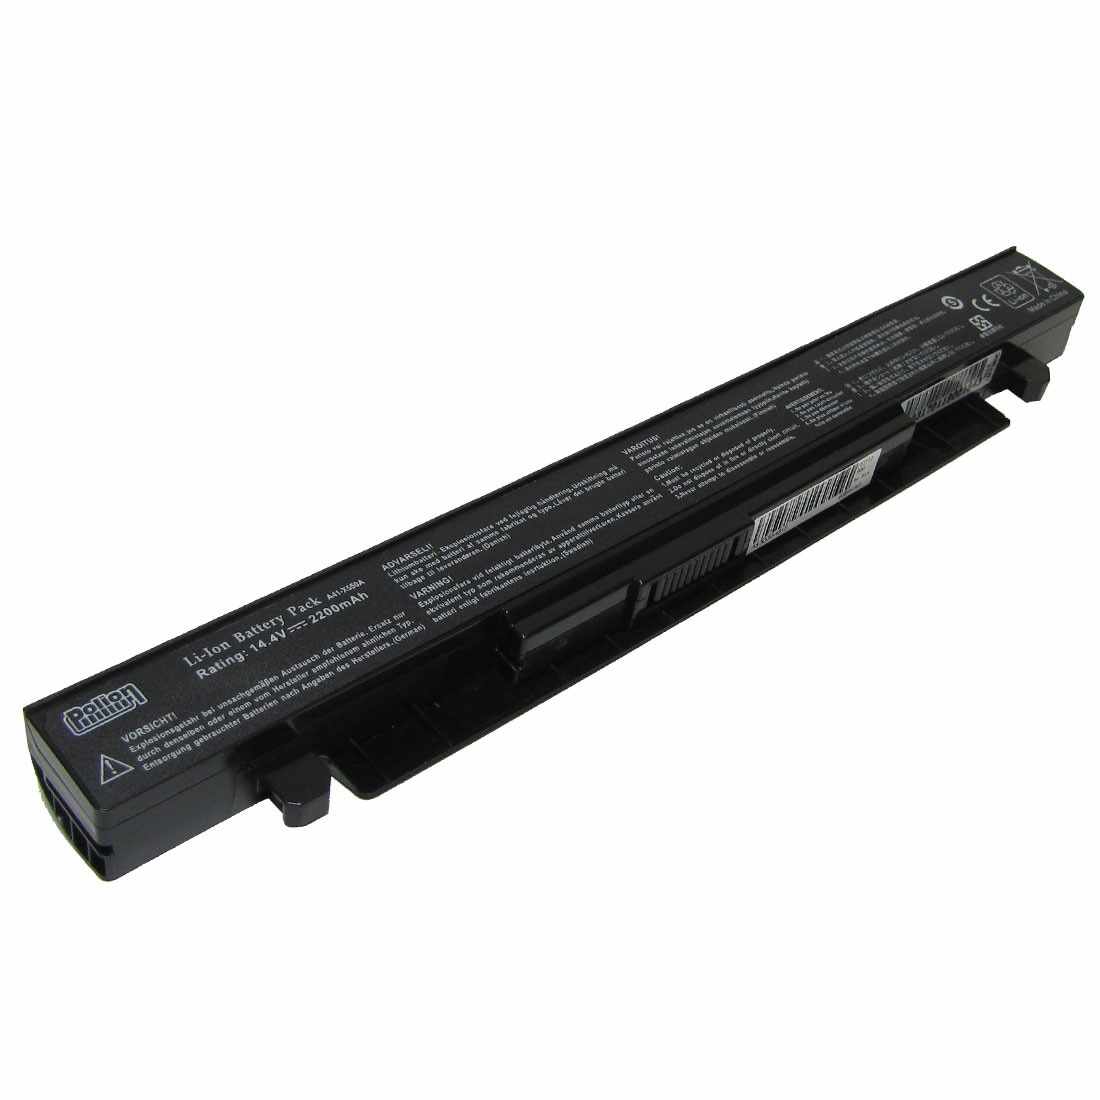 Baterie laptop Asus A41-X550A X550 K550 R510 F550 F552 X552 P550 P450 X450 X452